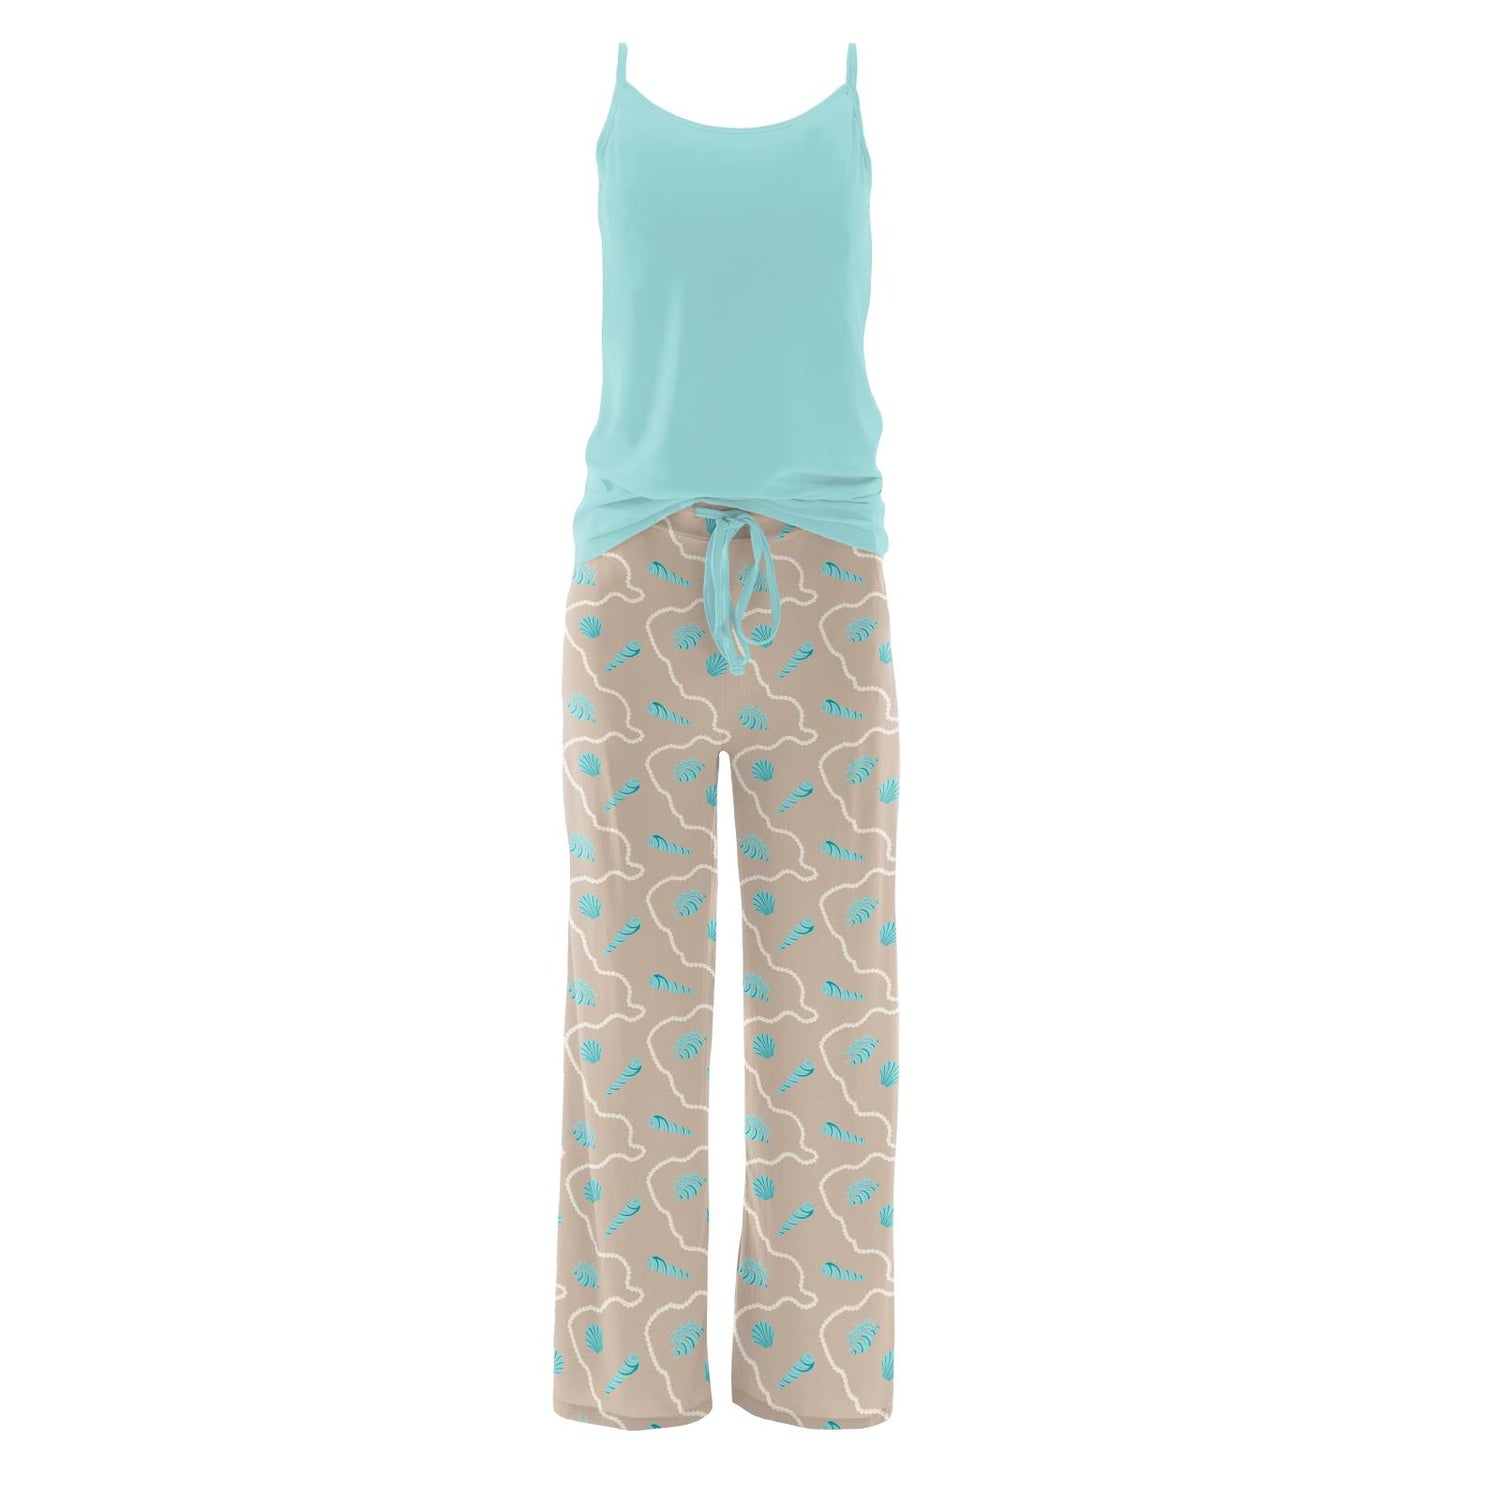 Cami and Print Lounge Pants Pajama Set in Burlap Shells